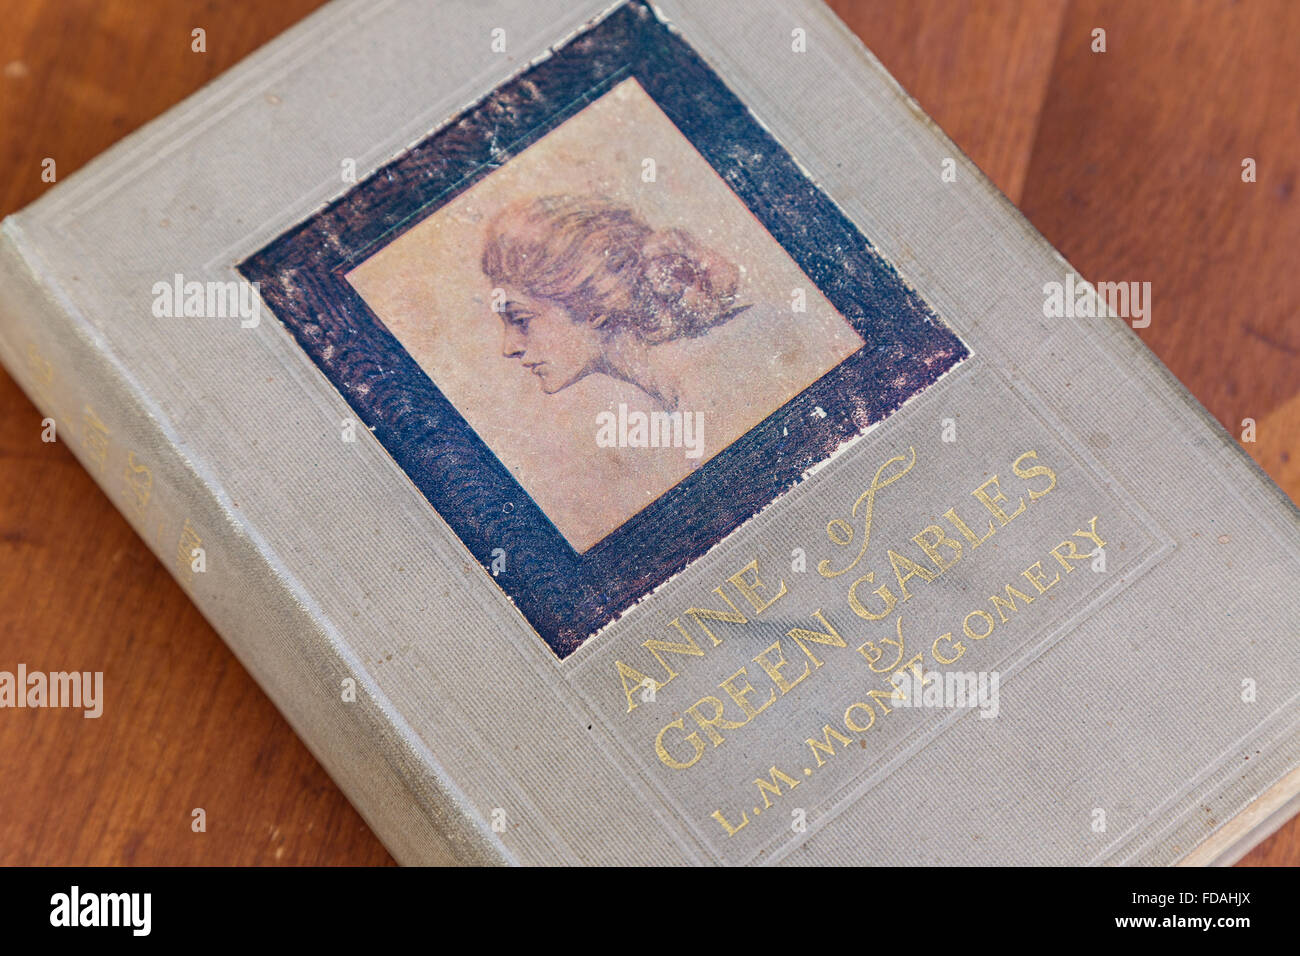 Erste Auflage von Anne von Green Gables von L.M.Montgomery. Stockfoto